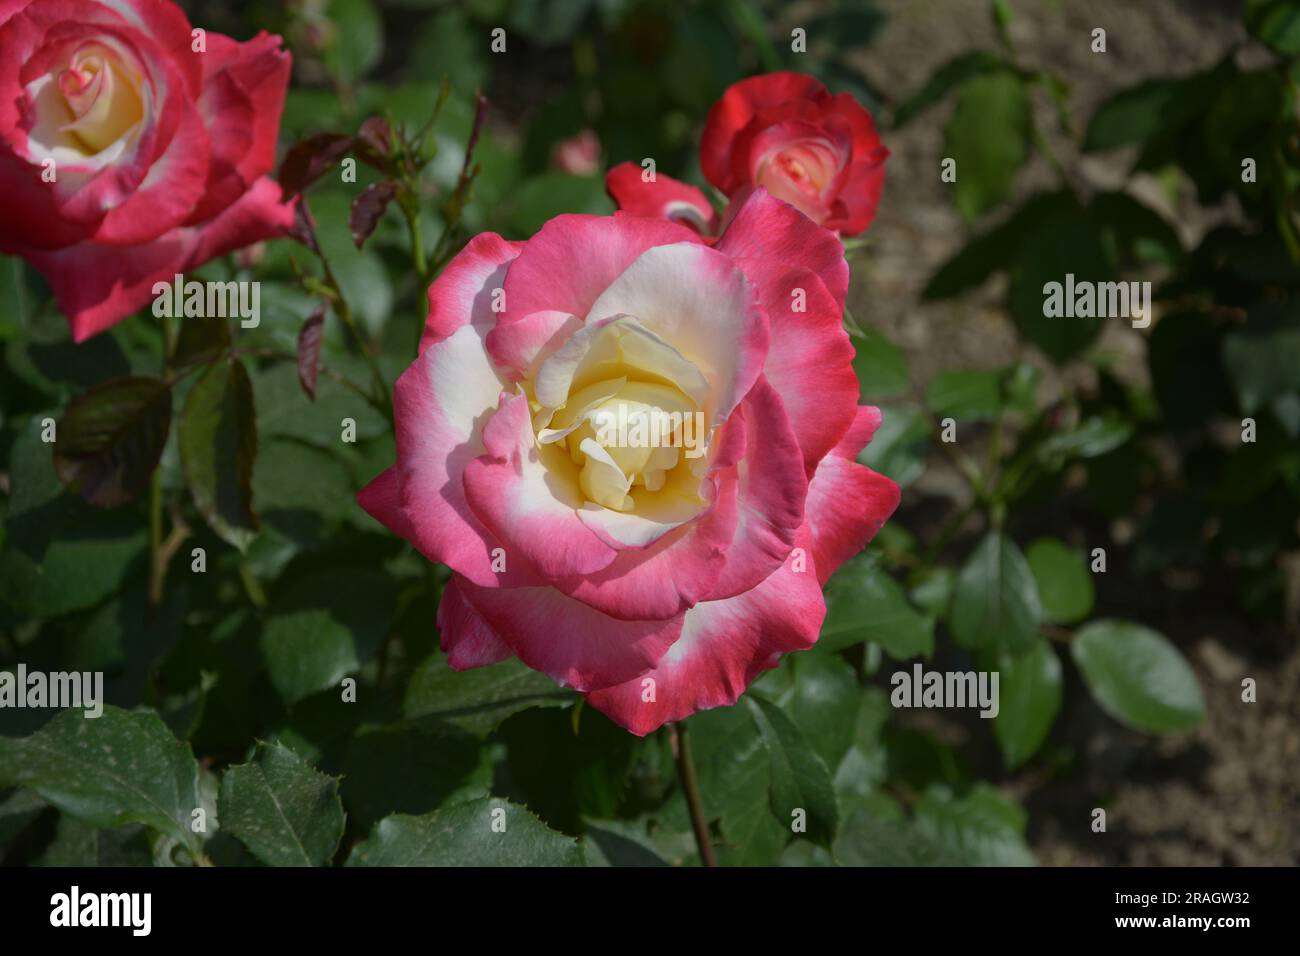 Eine isolierte Rose mit gelben und roten Blütenblättern blüht an sonnigen Tagen im Garten Stockfoto